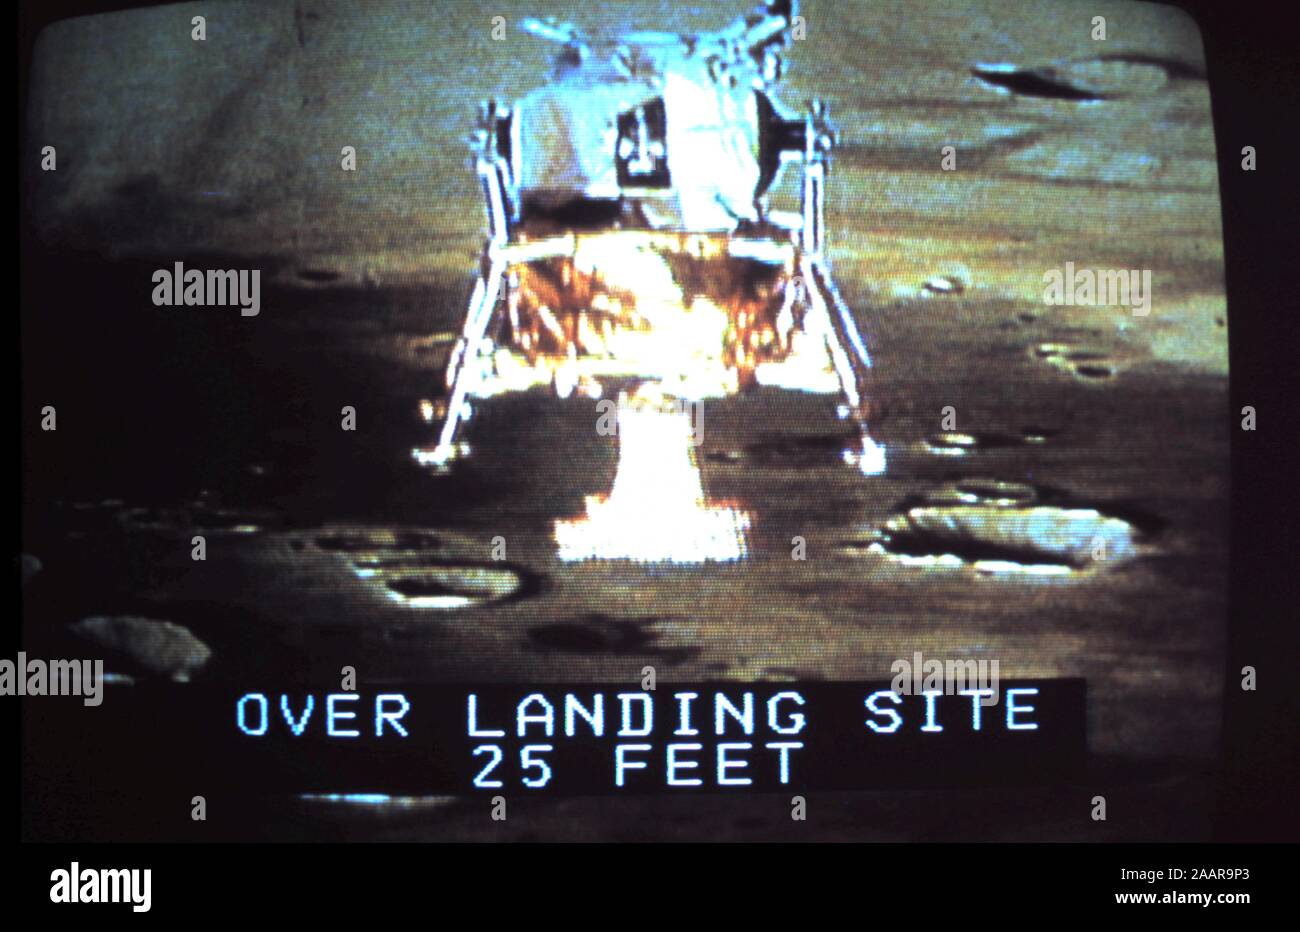 - Teleclip Module lunaire la modalité "' d'Apollo 17 - Moon Landing avec 'Plus de 25 pieds d'atterrissage' sous-titre ; photographie prise directement à partir d'écran TV - circa 1972 Banque D'Images